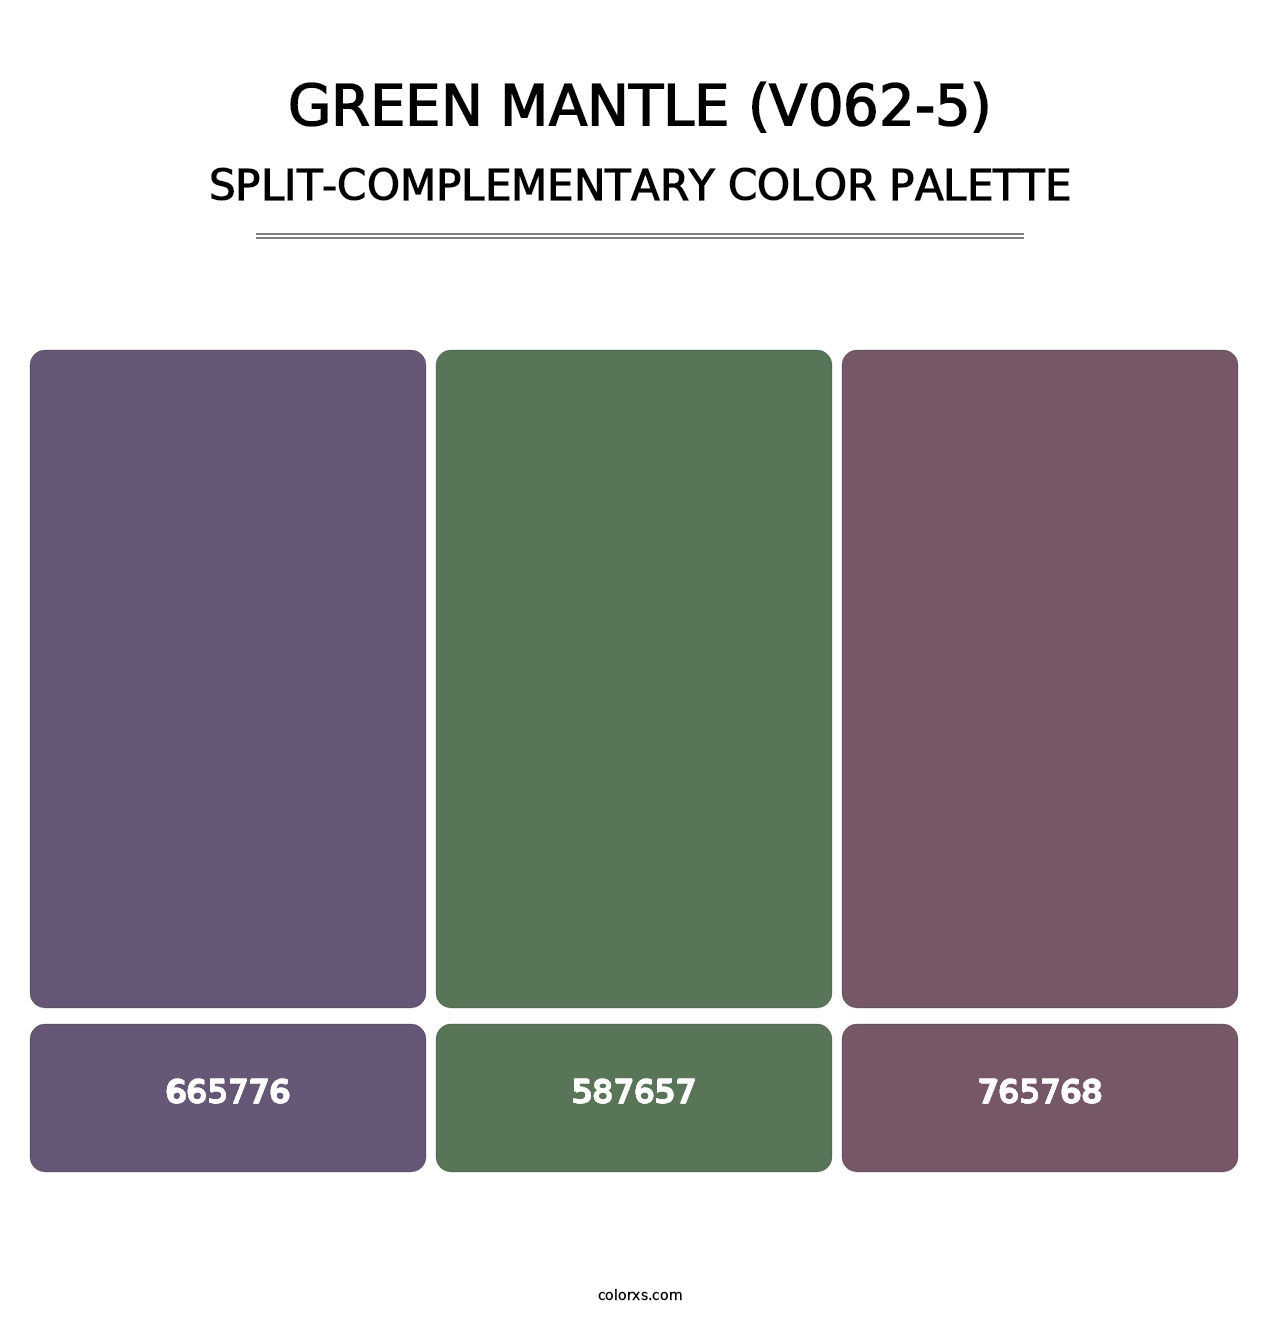 Green Mantle (V062-5) - Split-Complementary Color Palette